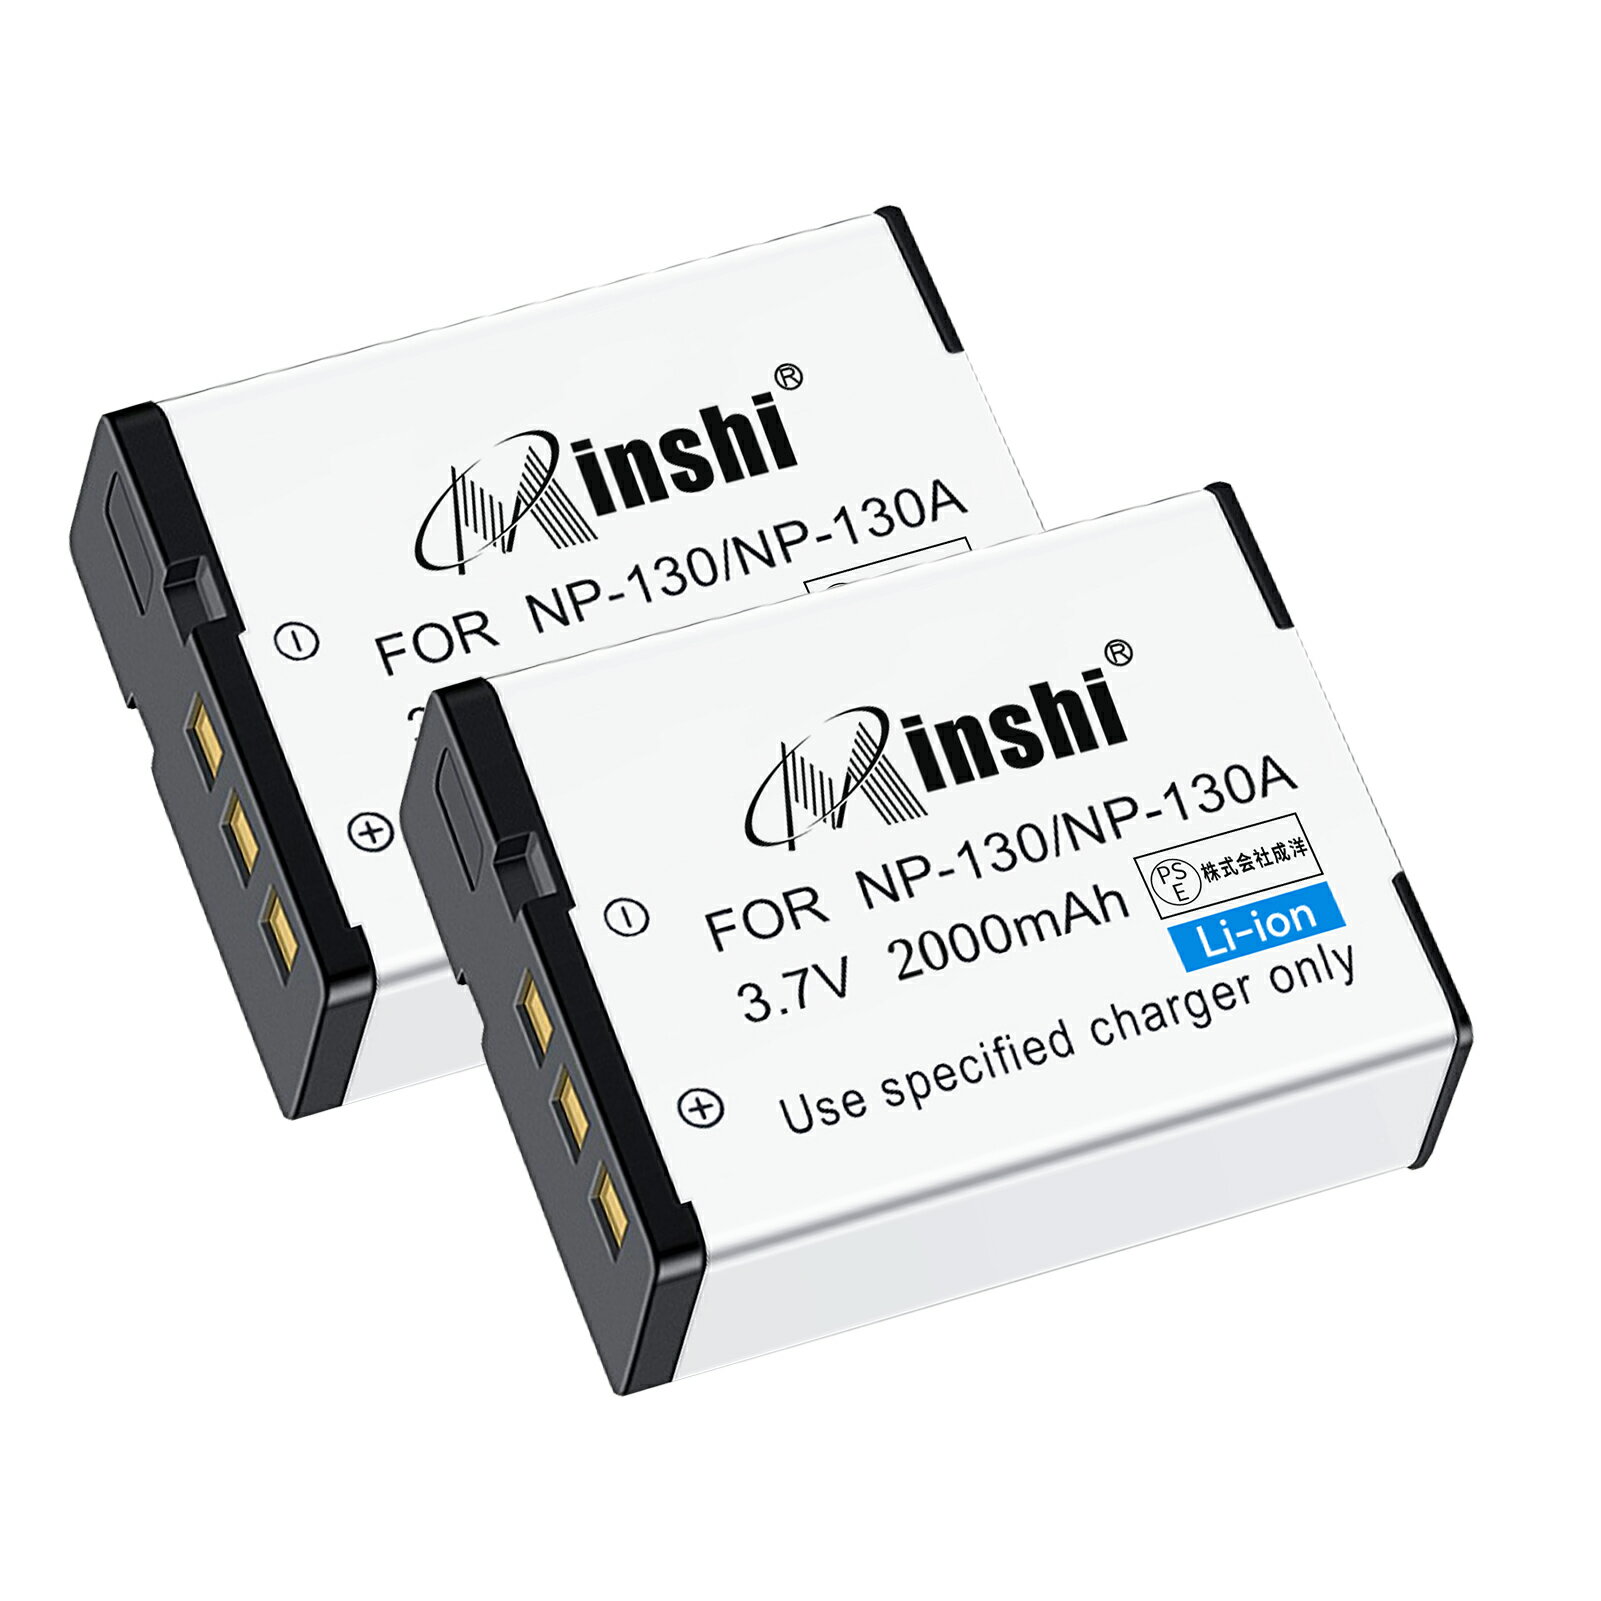 【2個セット】minshi 新品 Casio EX-ZR300 互換バッテリー 2000mAh 高品質交換用リチャージブル カメラバッテリー リチウムイオンバッテリー デジタルカメラ デジカメ 充電池 PSE認証 1年間保証 予備バッテリー